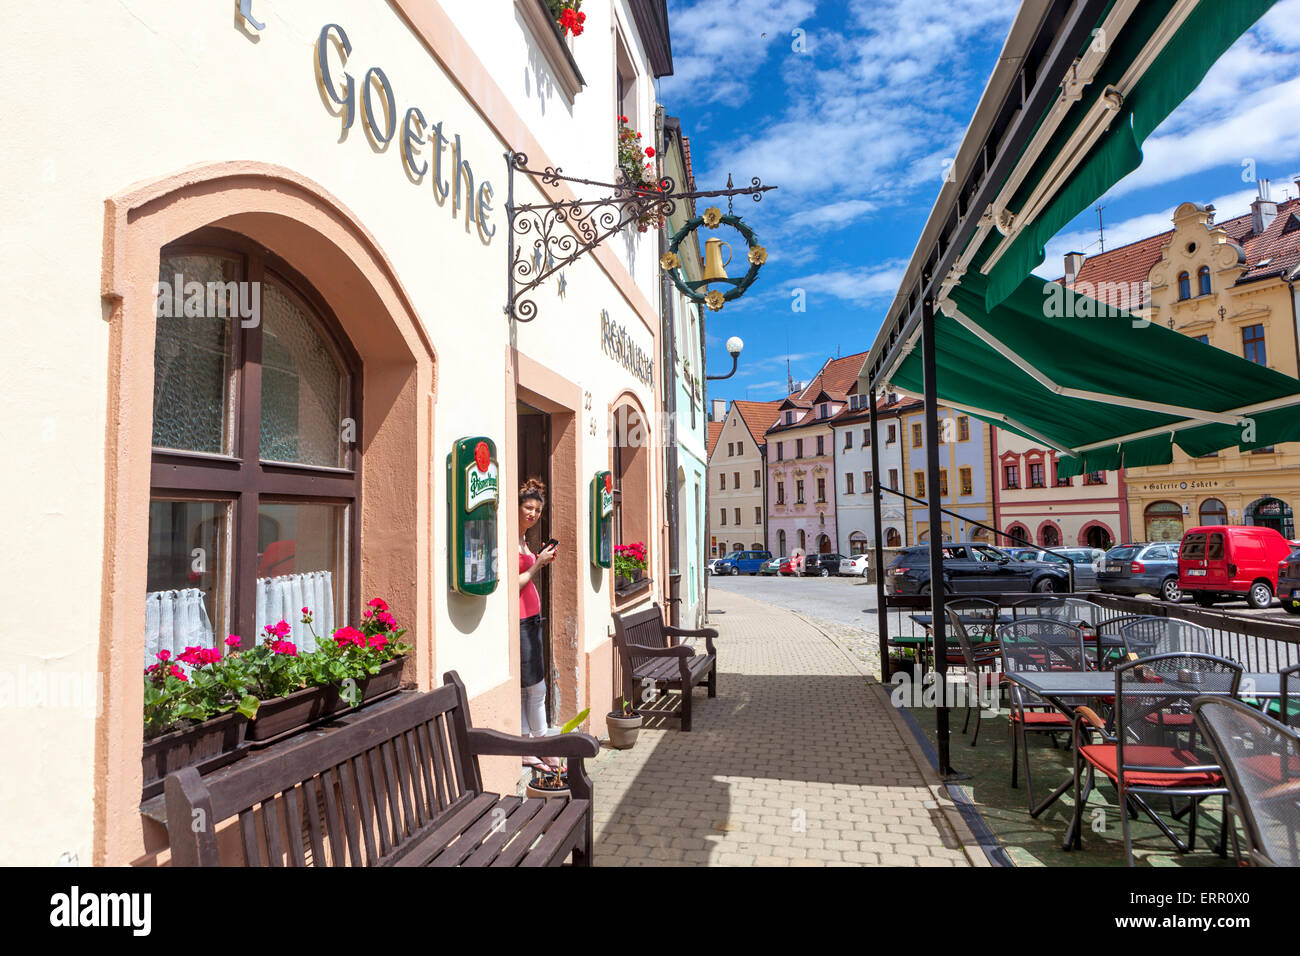 Historique de la vieille ville de Loket nad Ohri, Goethe hotel, République Tchèque Banque D'Images